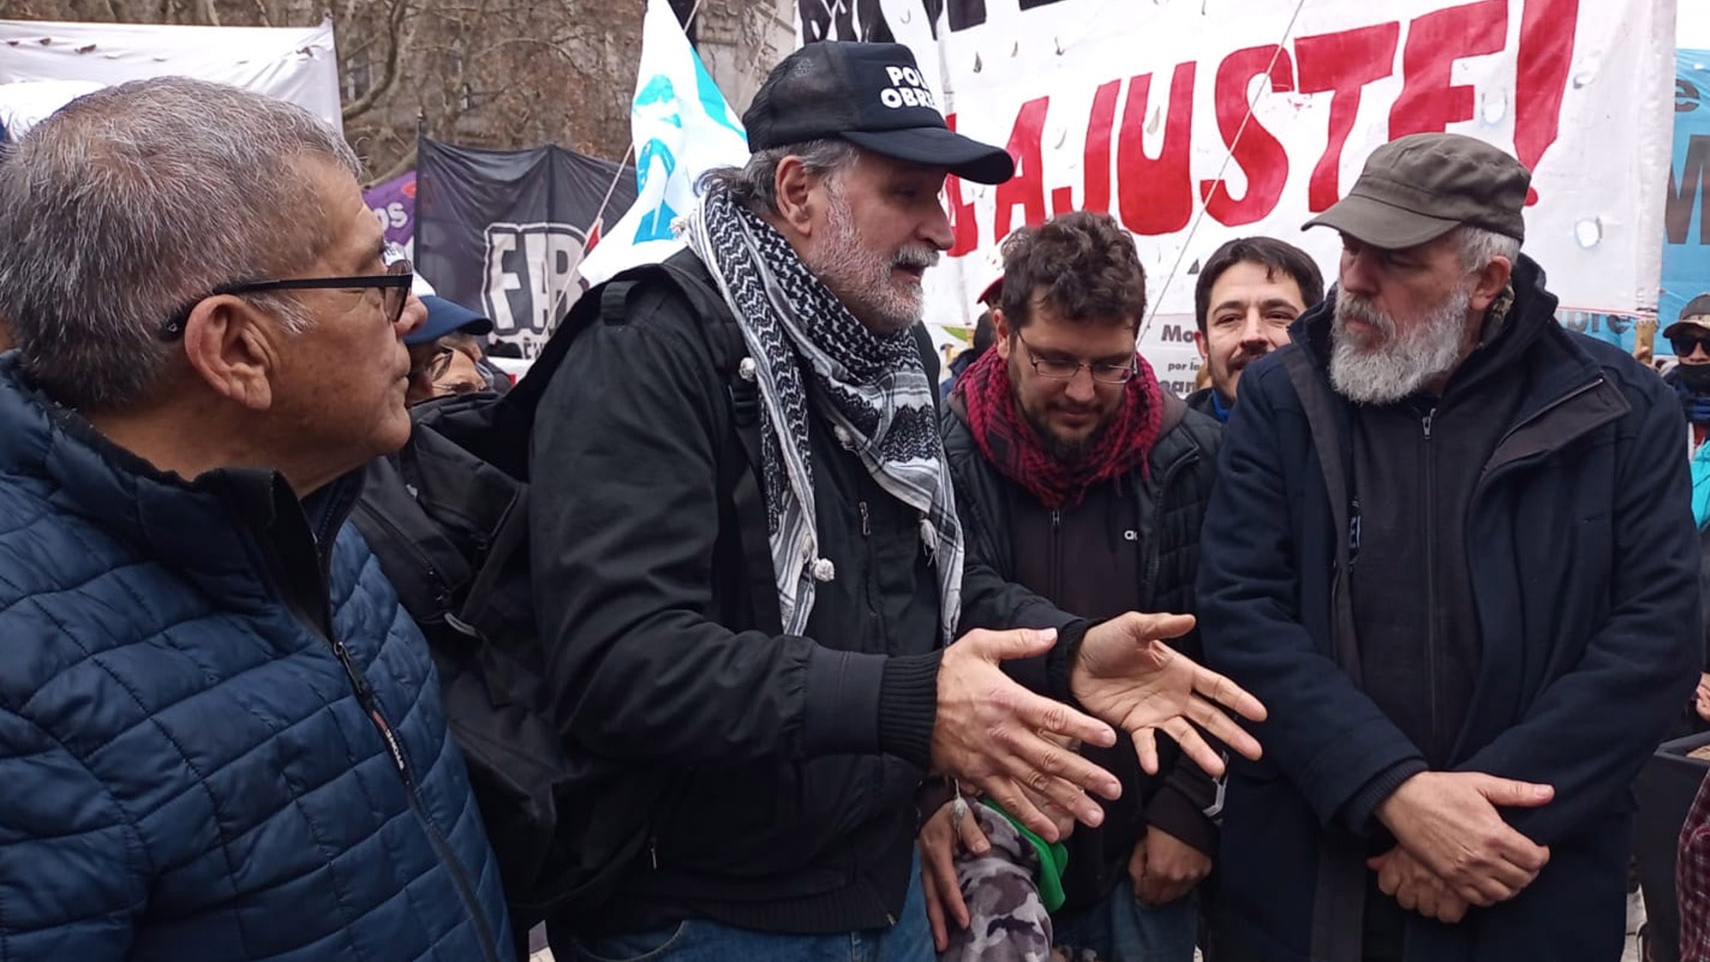 Eduardo Belliboni, Esteban Castro y Juan Carlos Alderete protestaran frente a Tribunales contra una supuesta "persecución judicial" y "estigmatización"